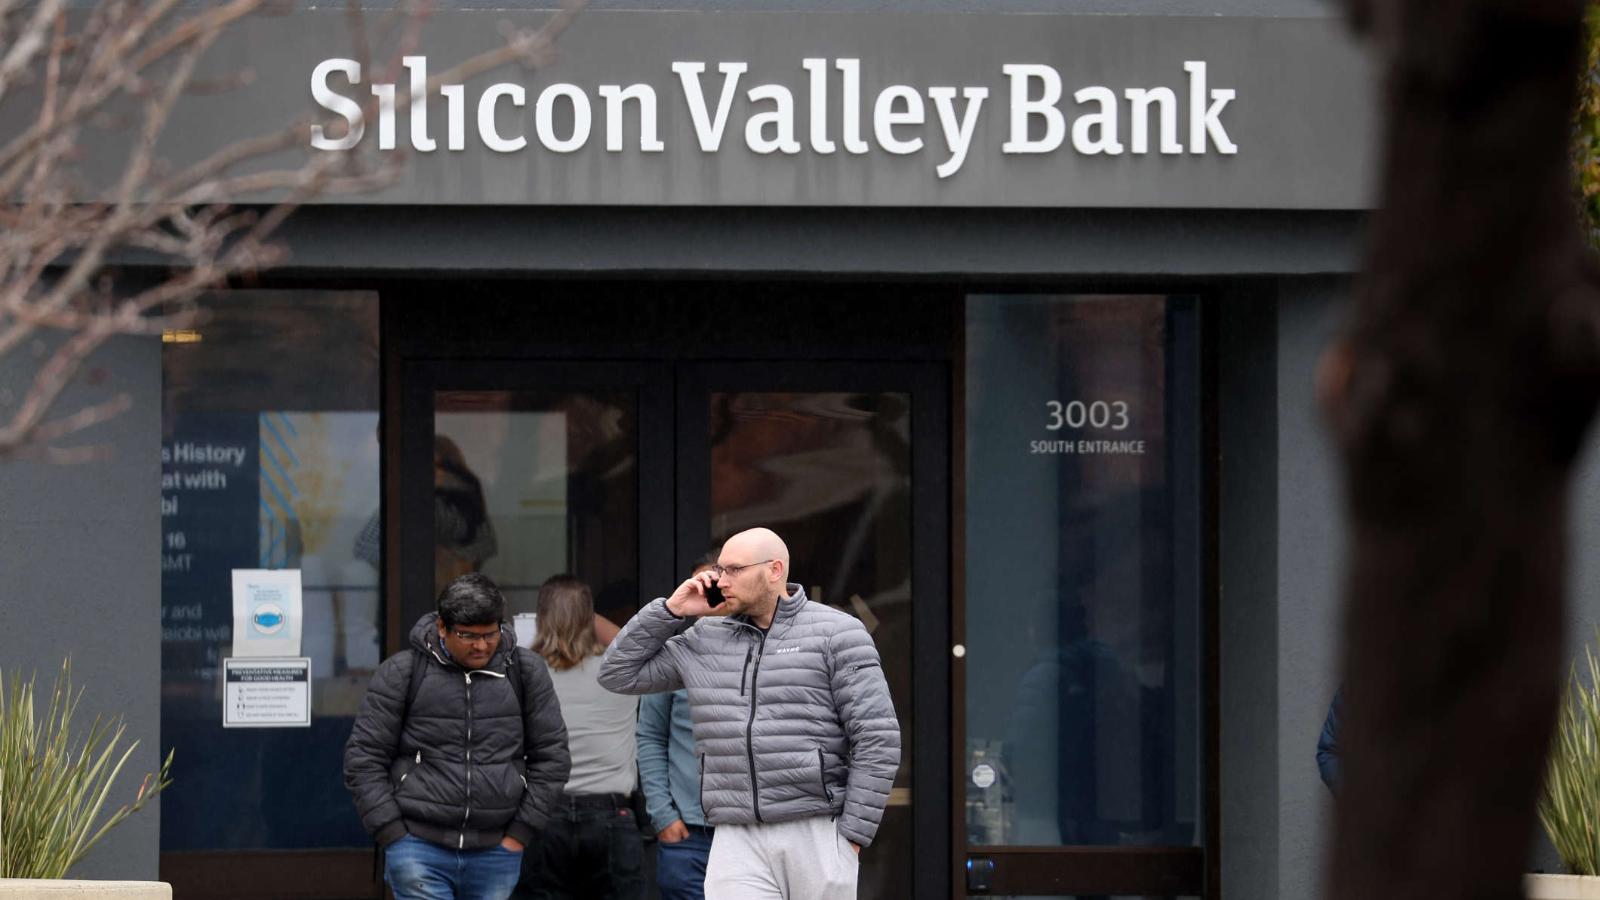 ¿Qué pasará con los empleados de Silicon Valley Bank después del colapso?